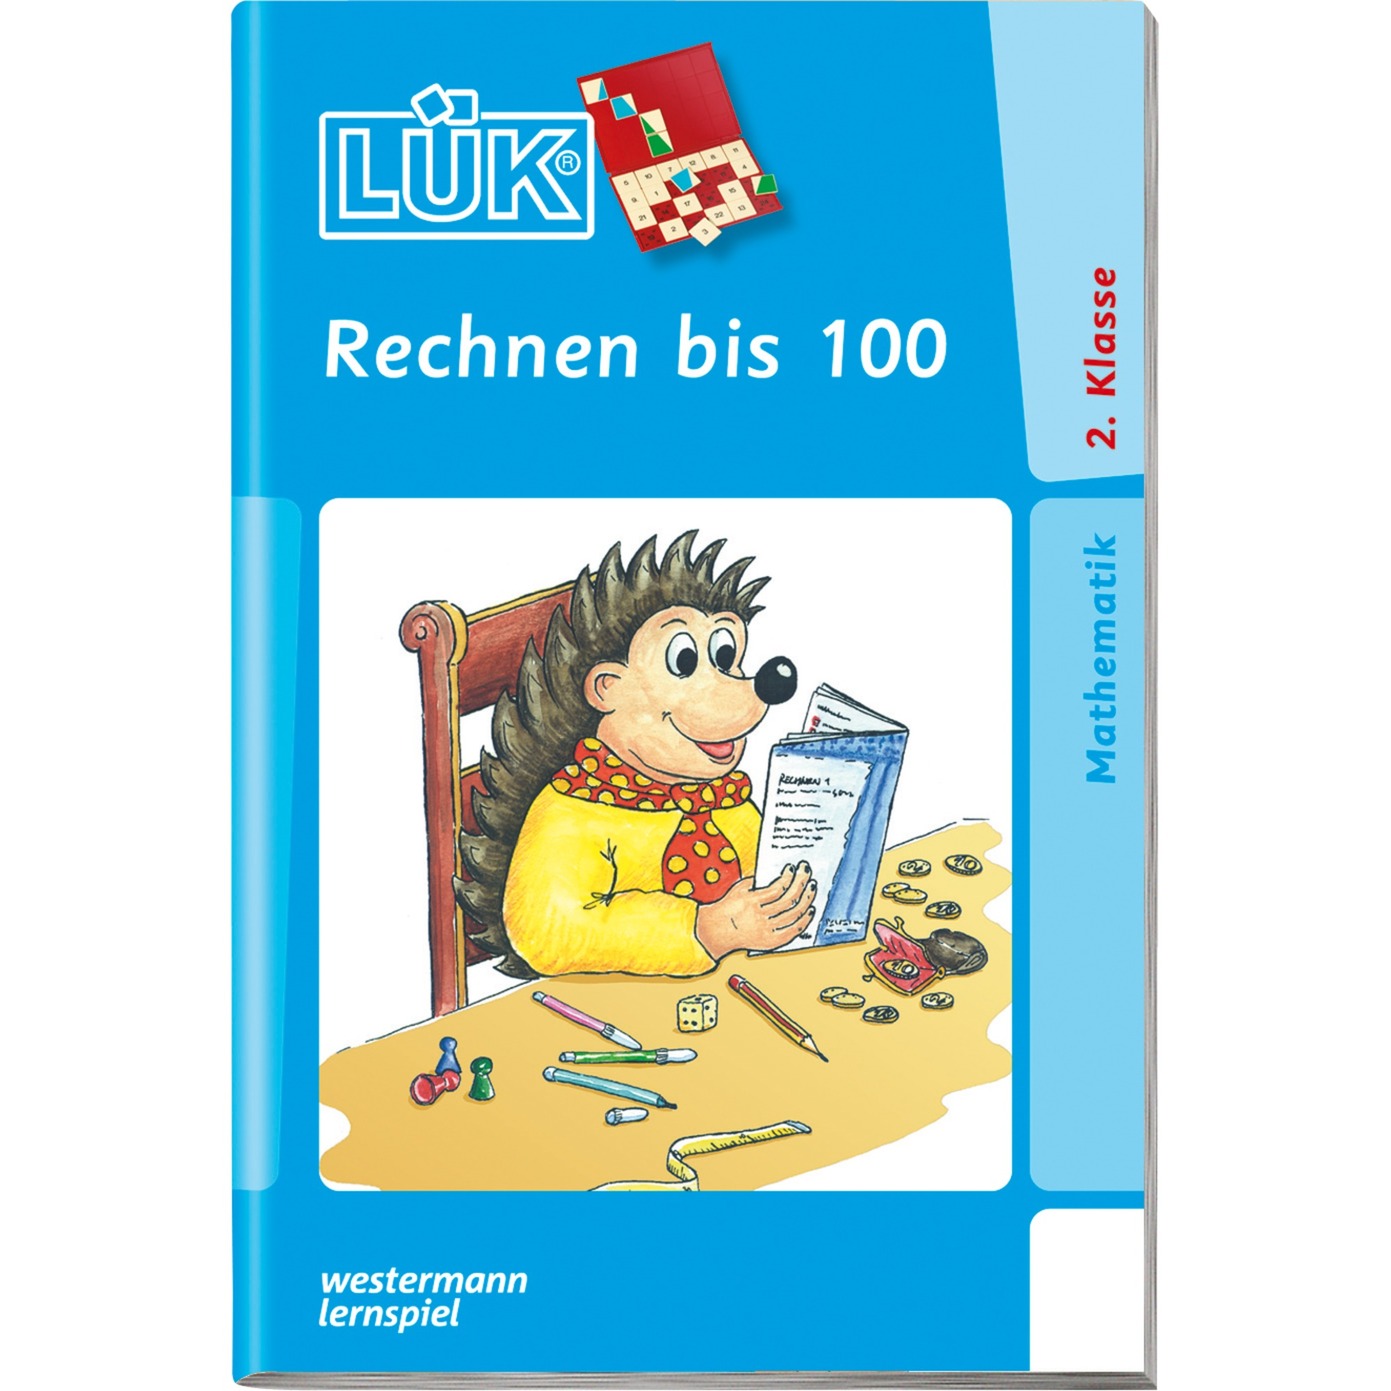 Rechnen bis 100 książka dla dzieci, Książki edukacyjne